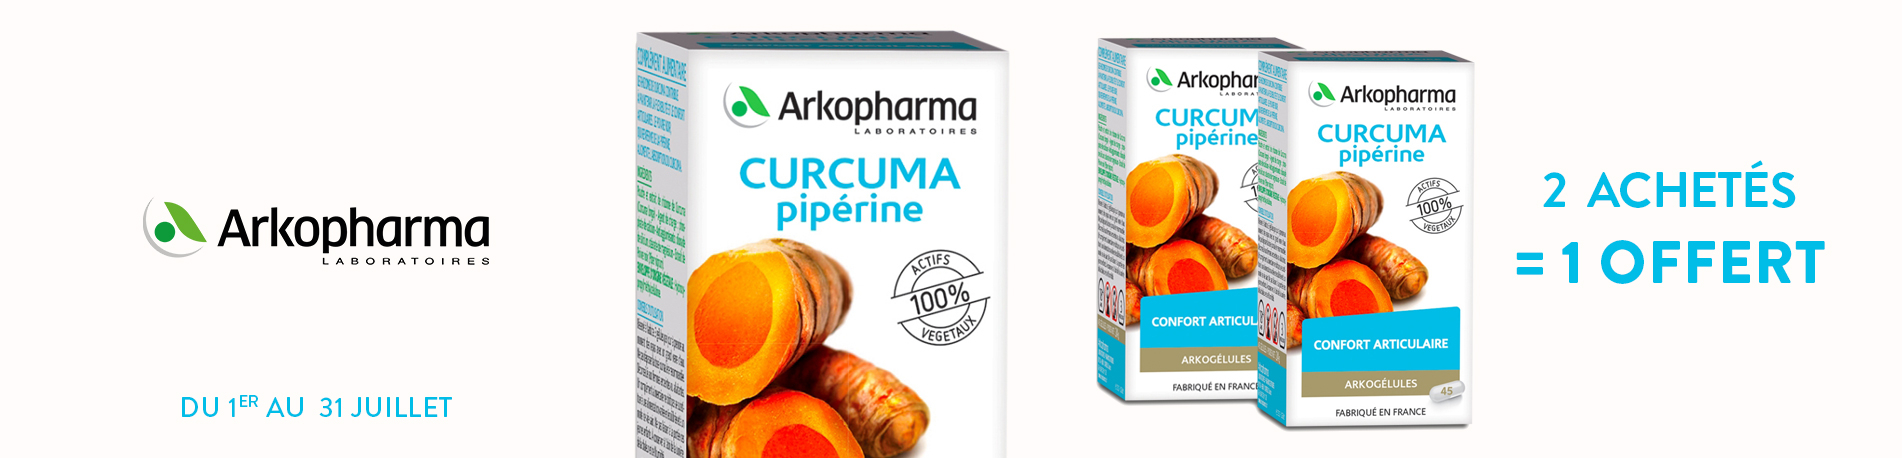 Promotion Arkopharma curcuma